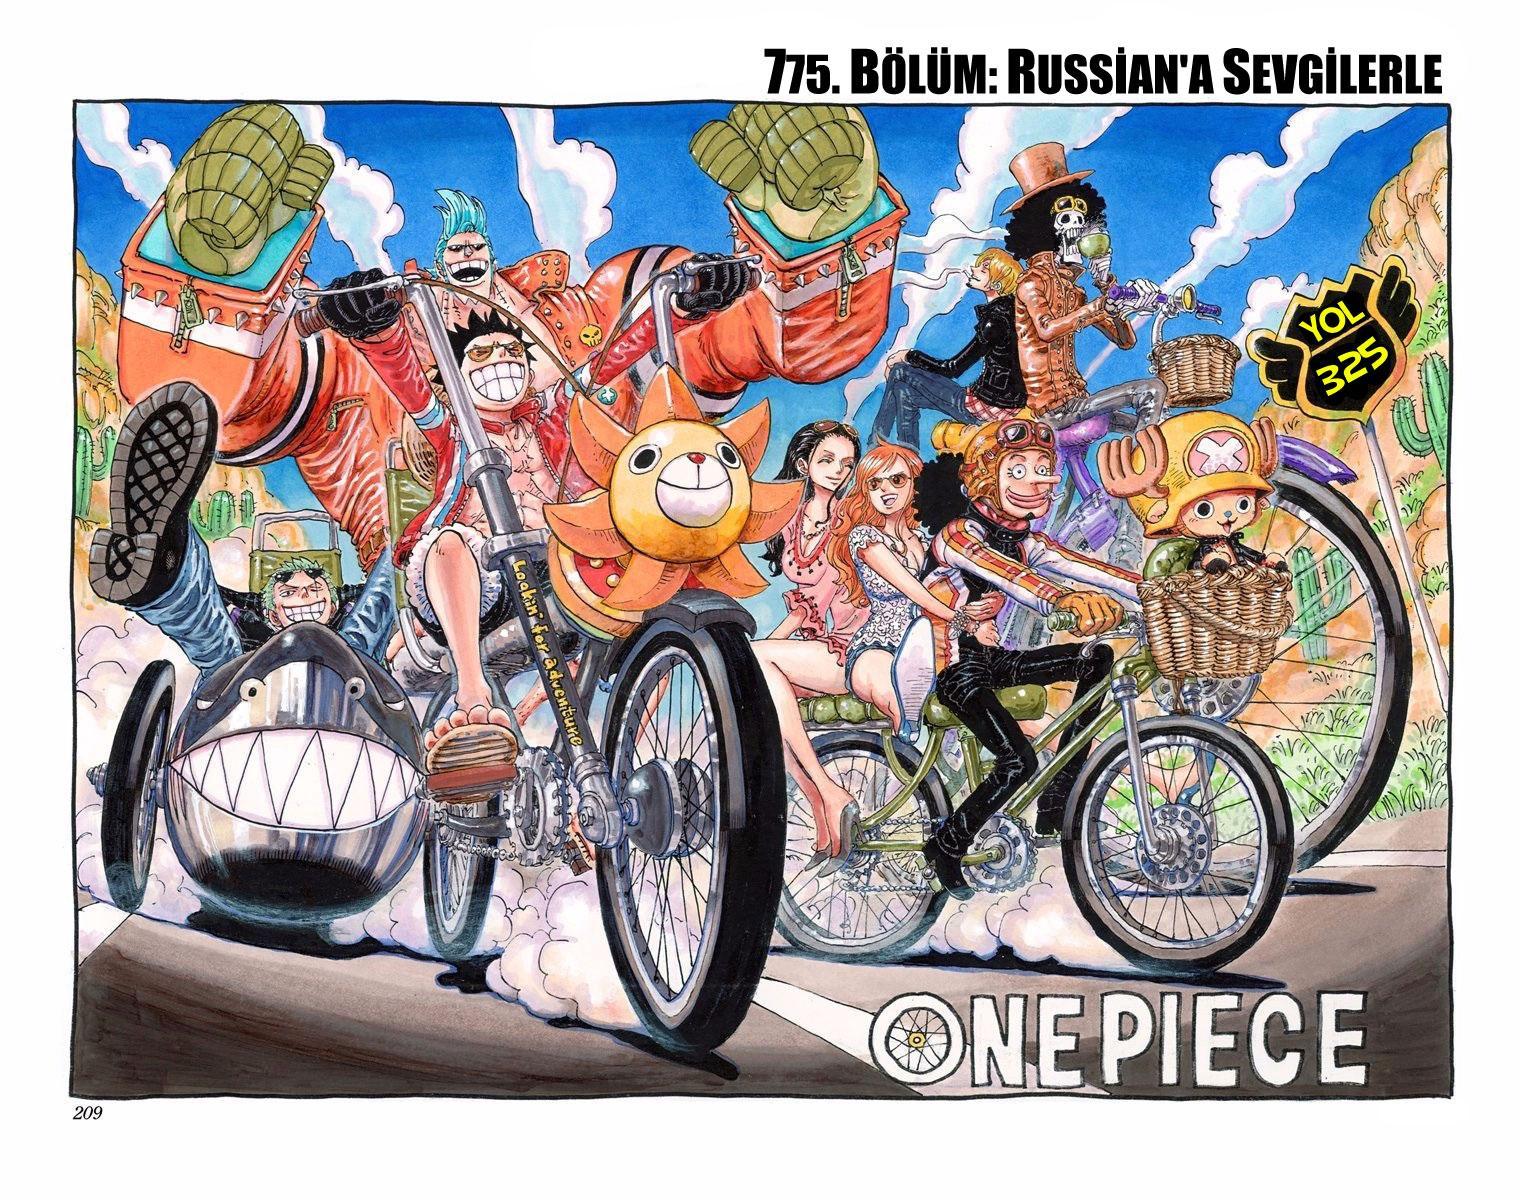 One Piece [Renkli] mangasının 775 bölümünün 2. sayfasını okuyorsunuz.